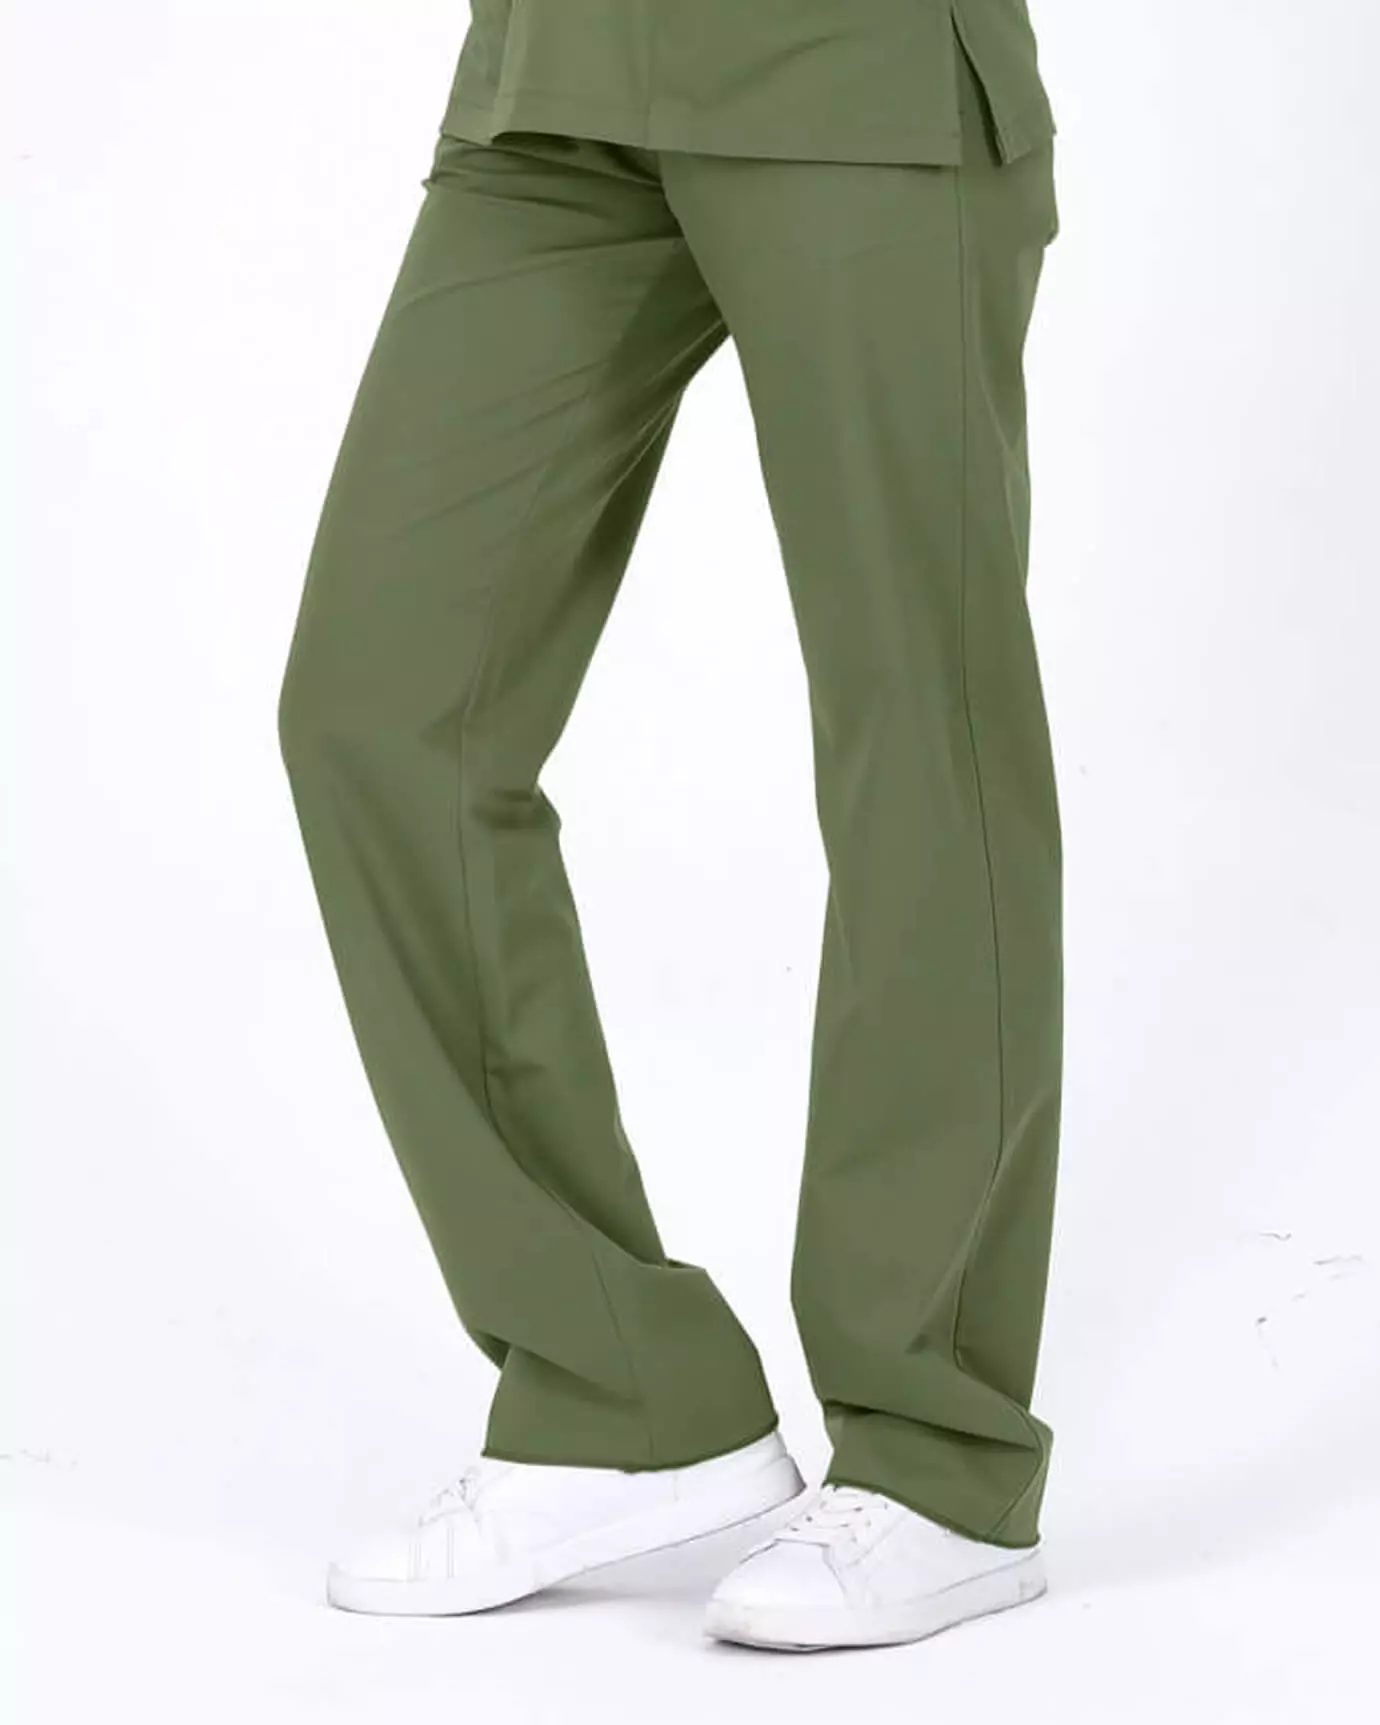 LAME Outlet - Relax Mint Yeşili Pantolon